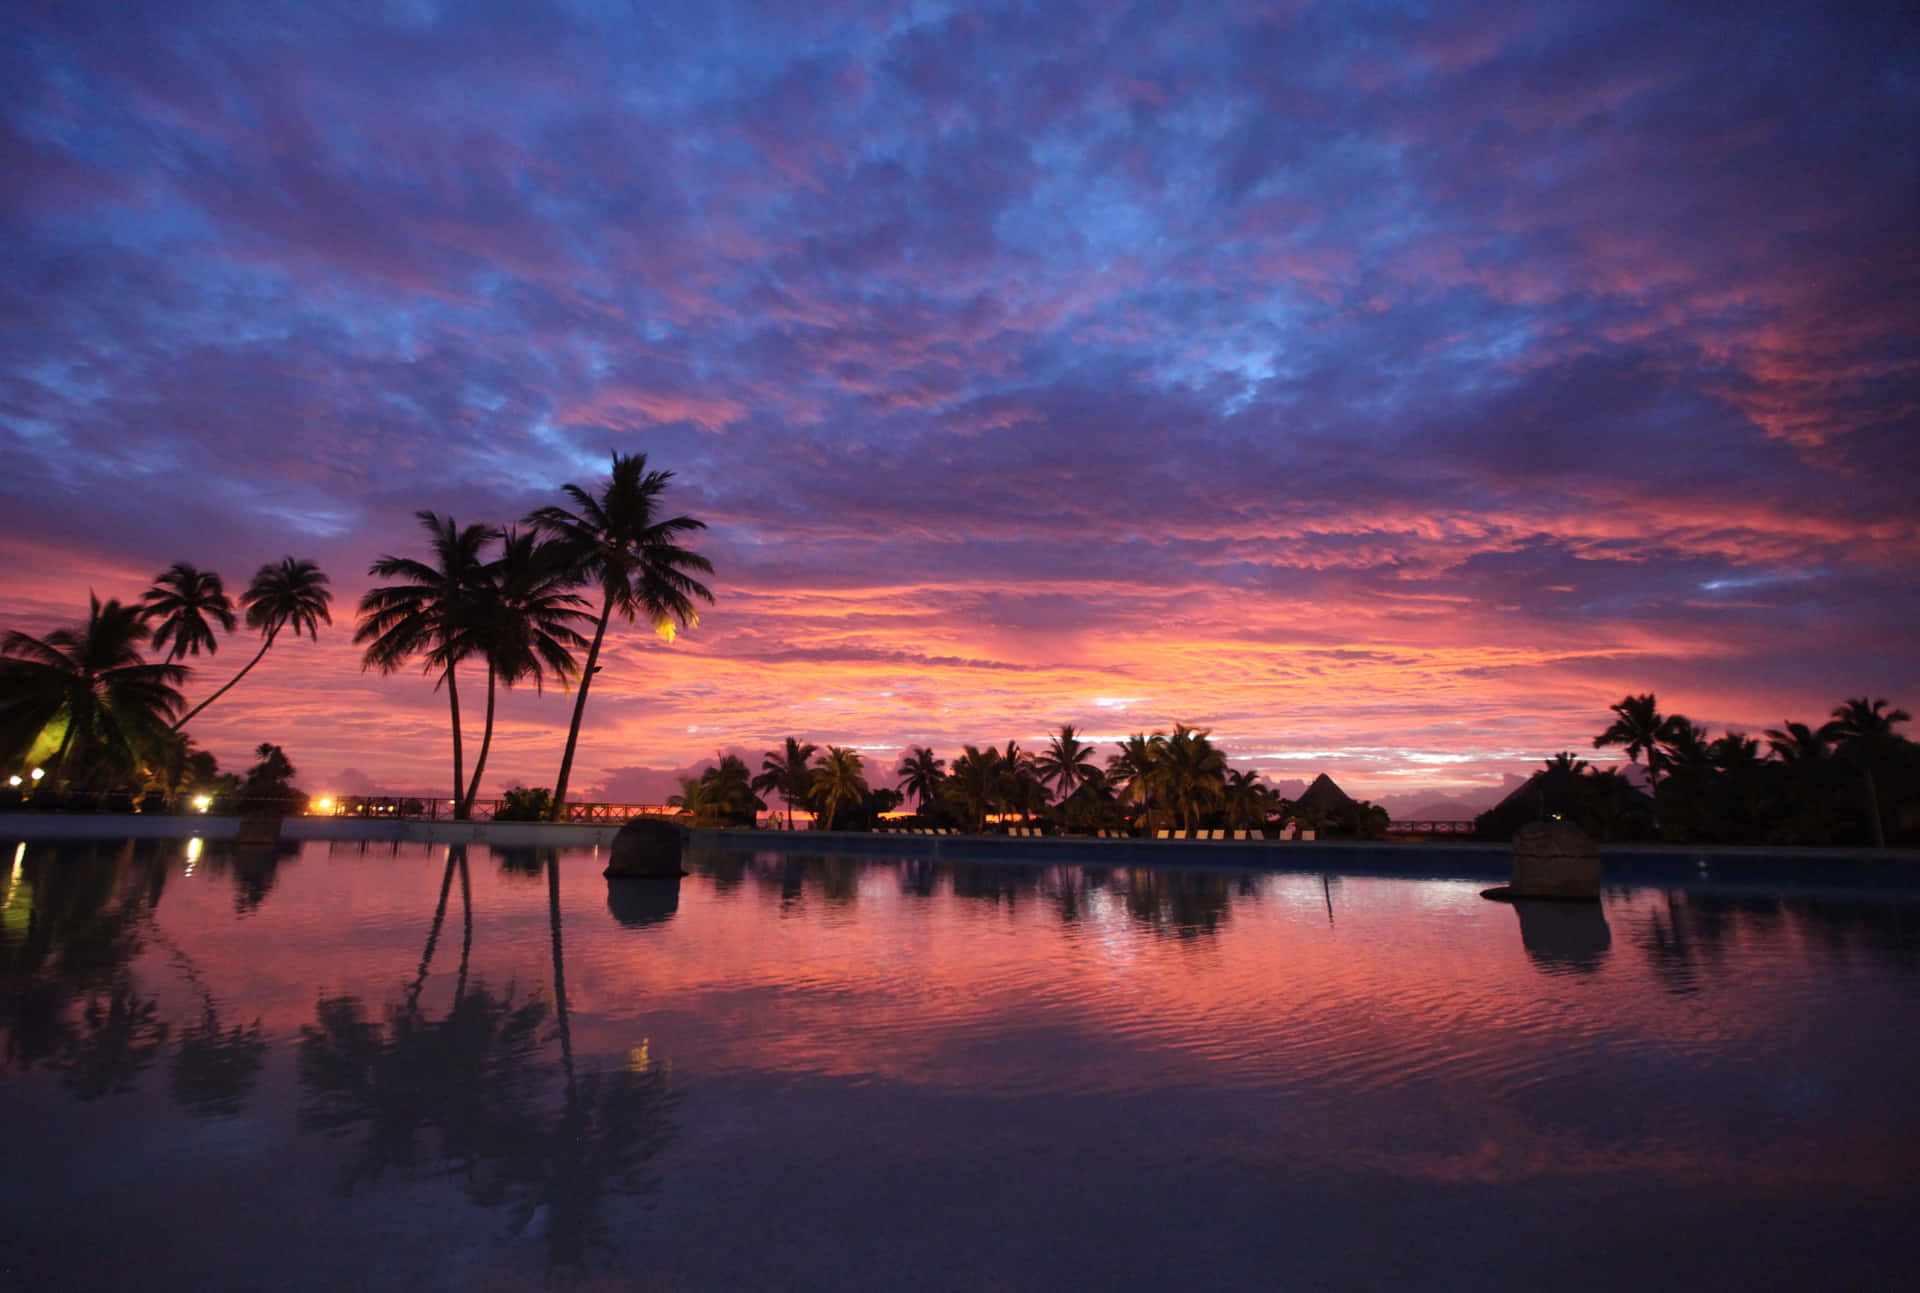 En solnedgang over et swimmingpool med palmetræer